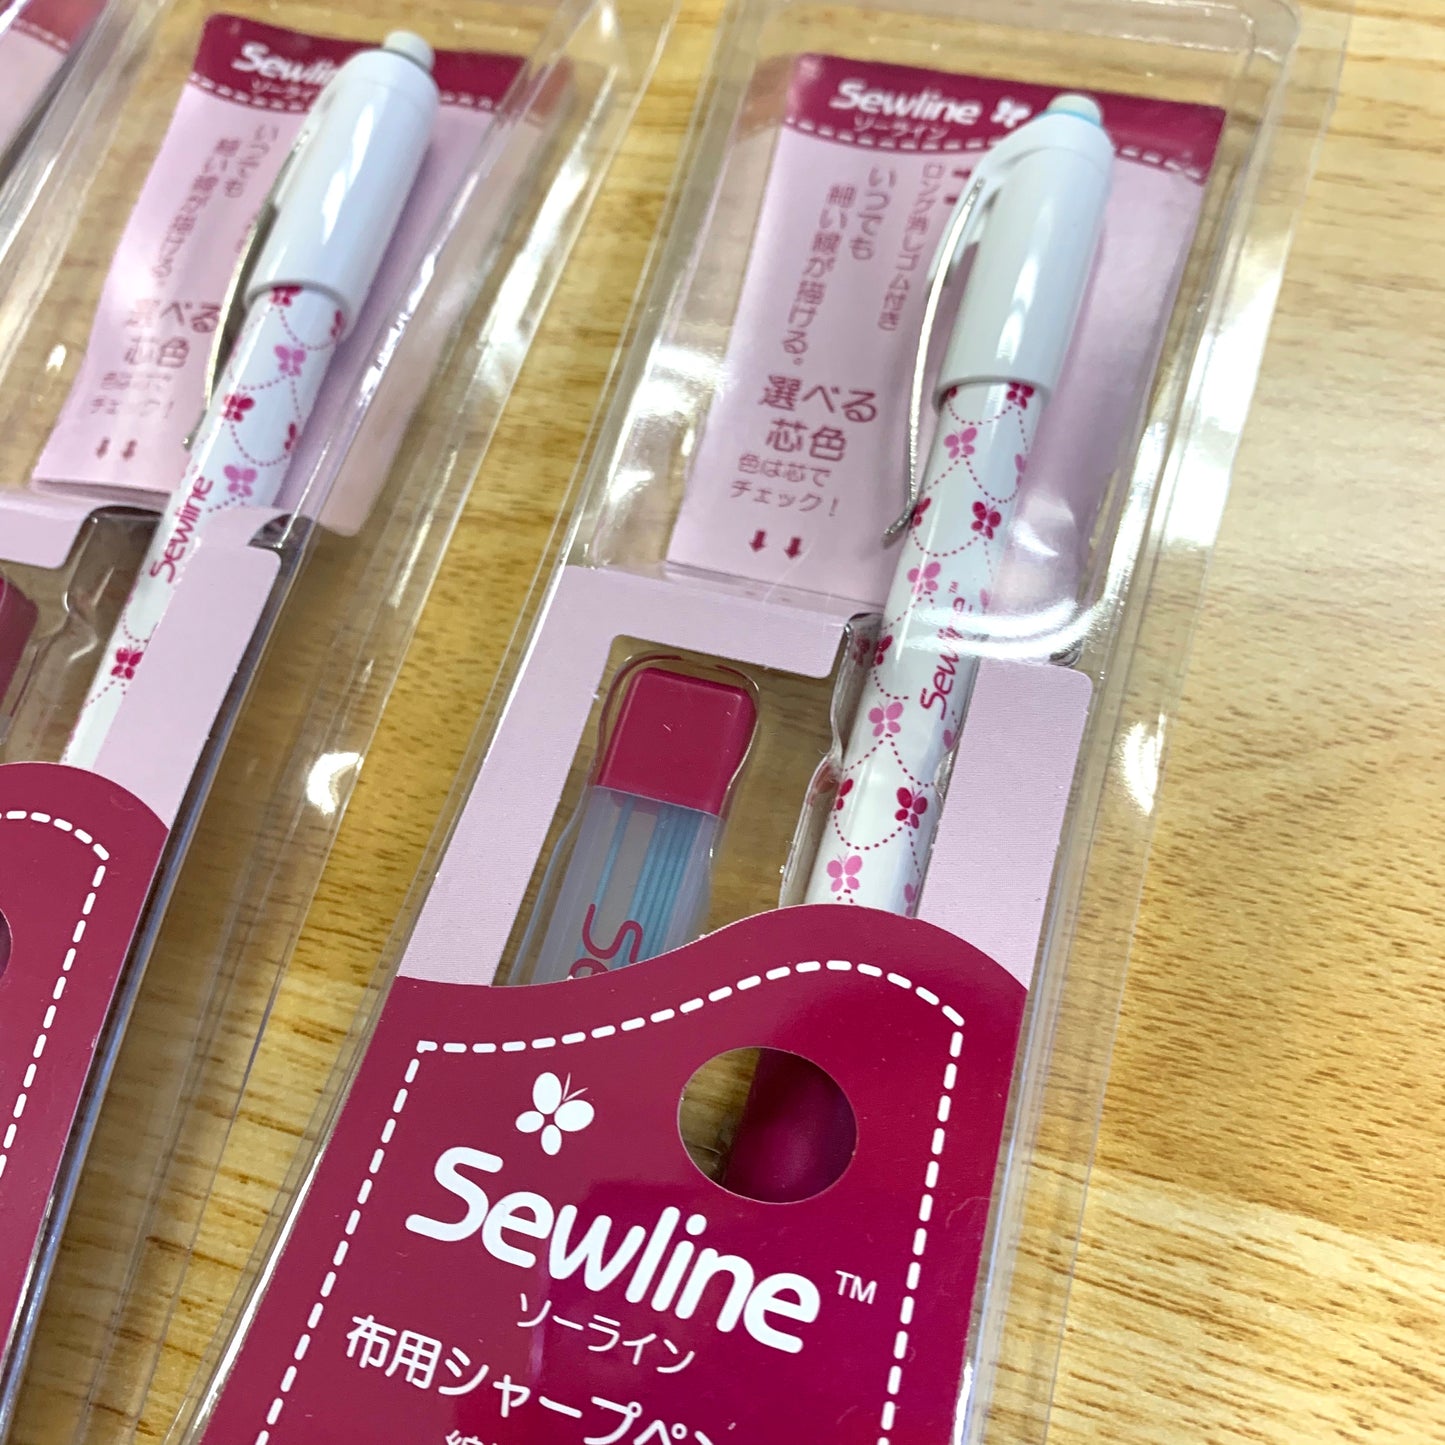 Sewline fabric pencil 布用鉛芯筆+1盒鉛芯